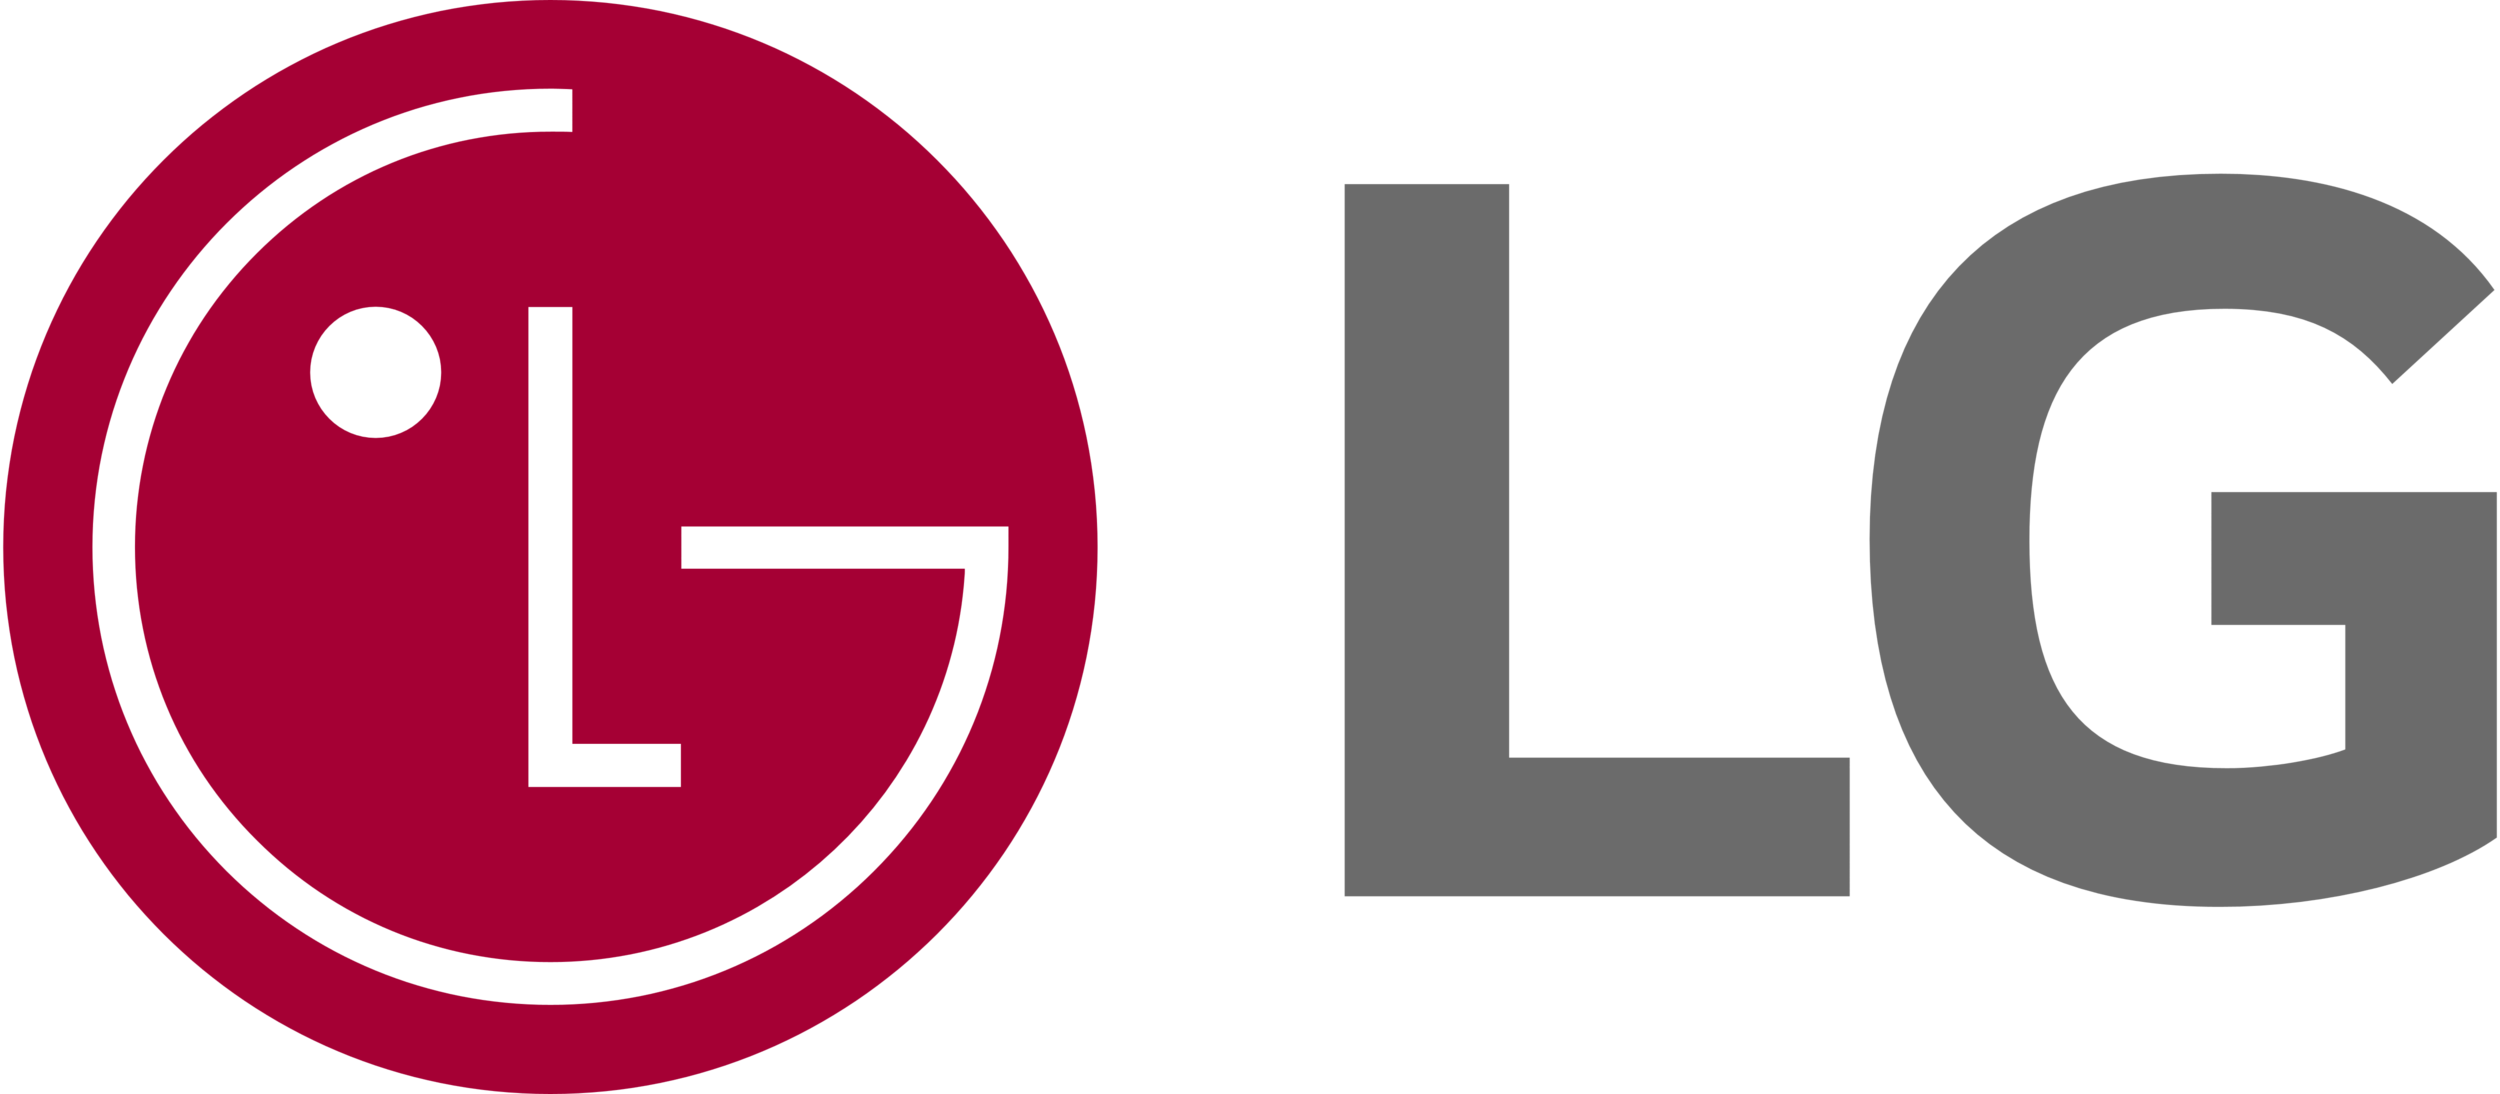 LG_logo.png